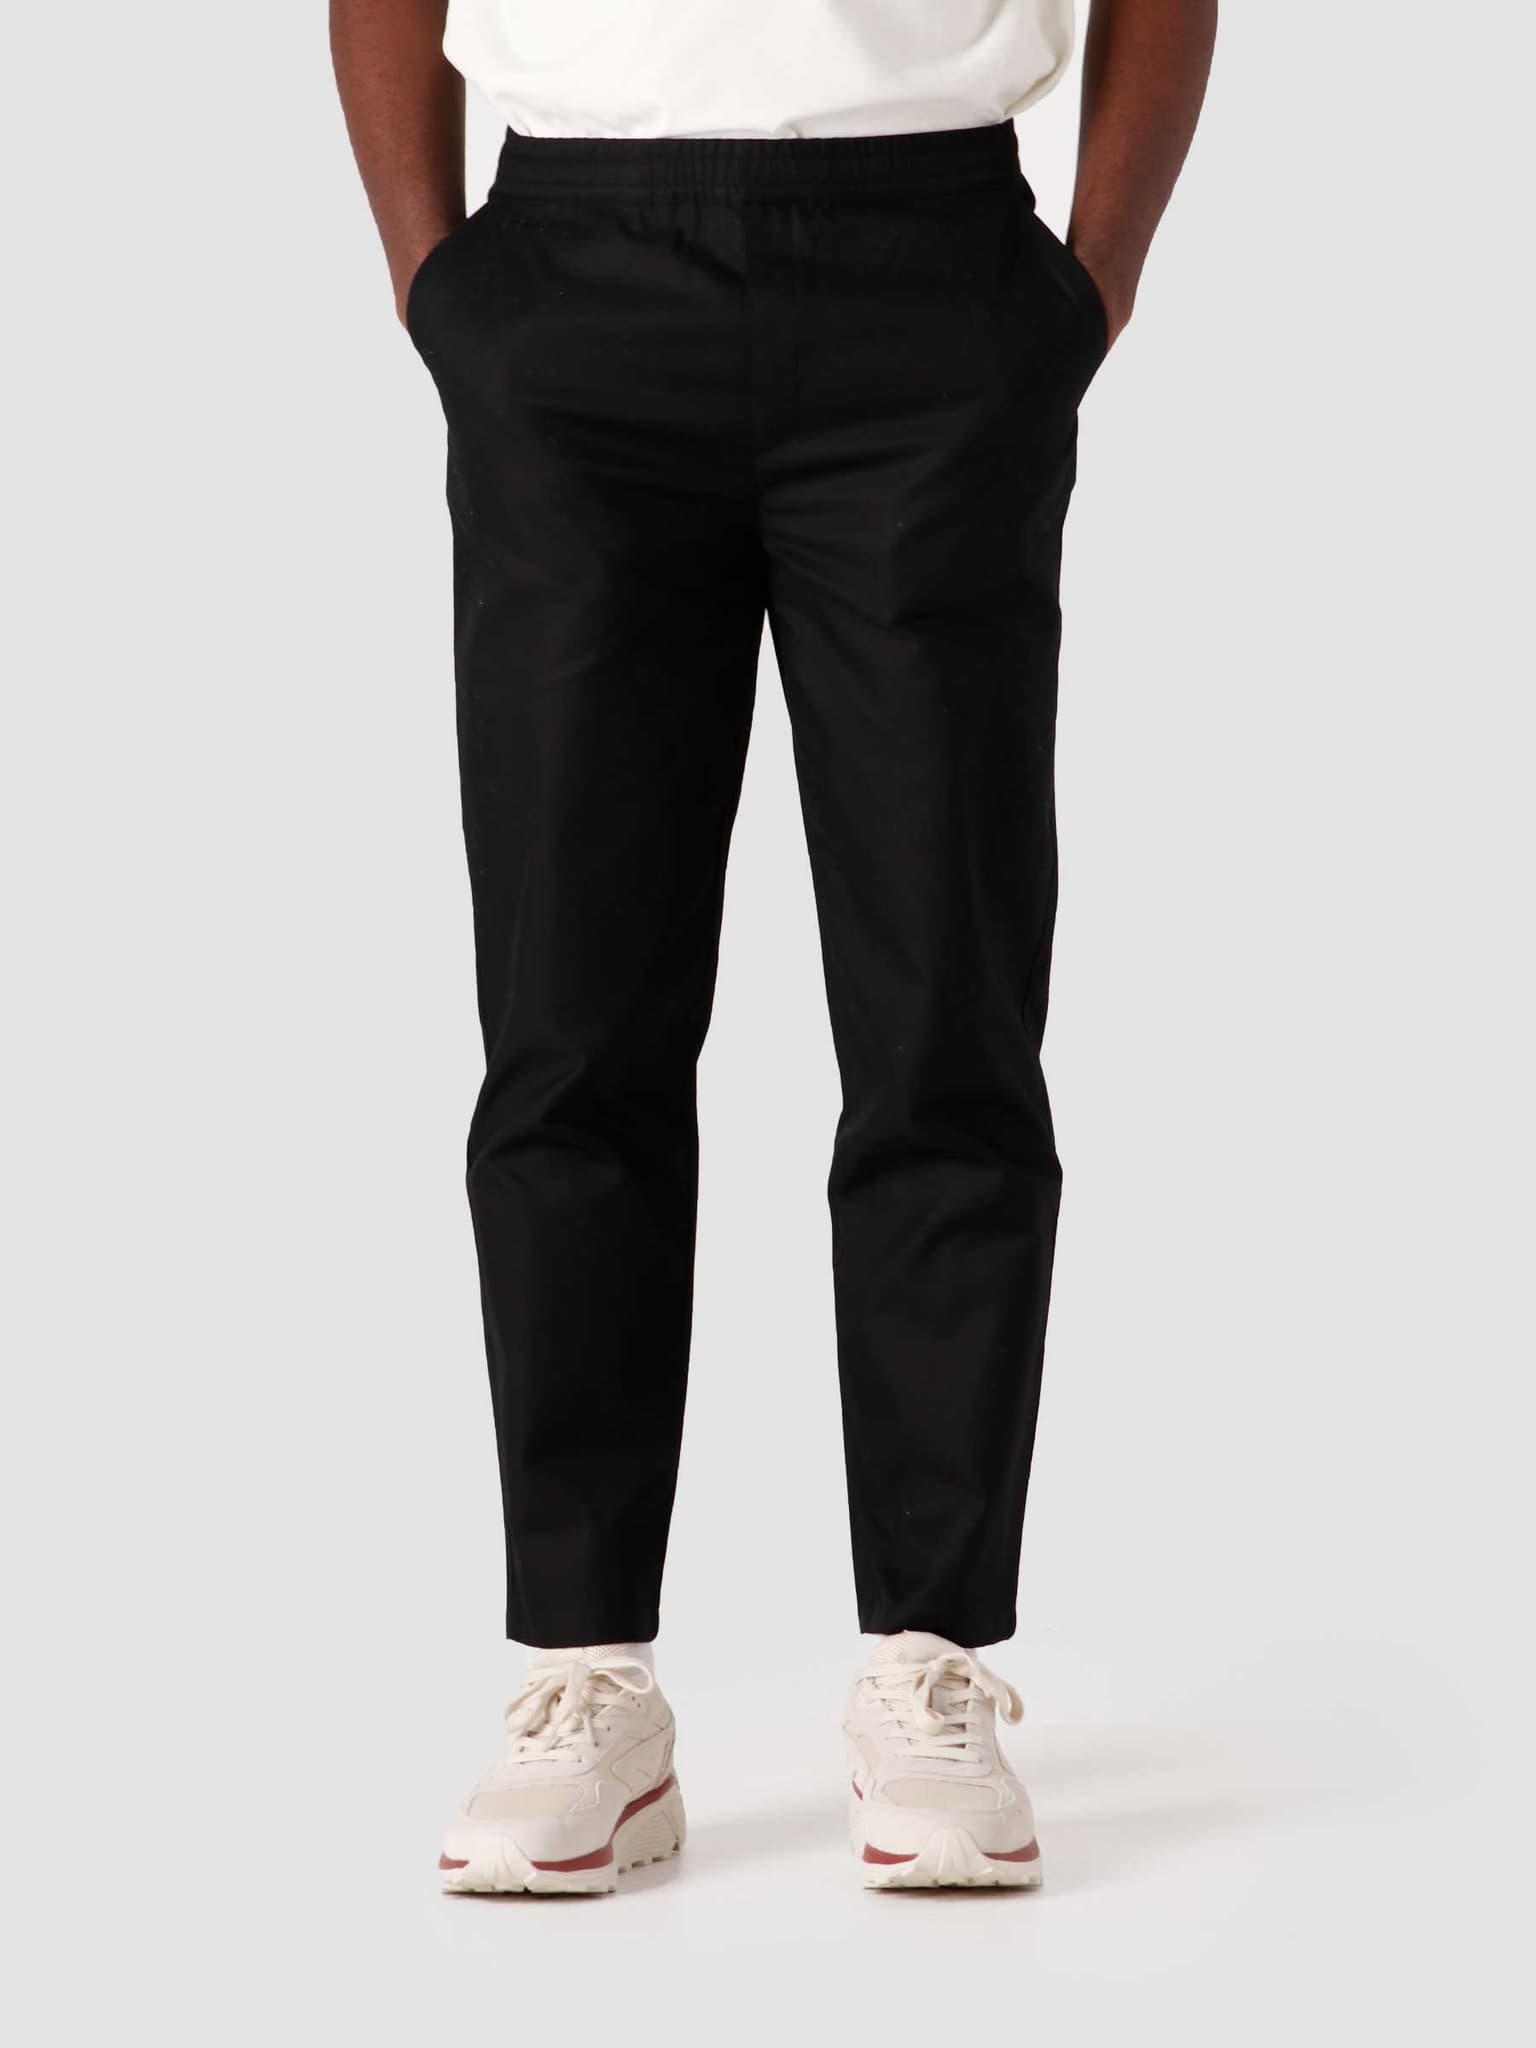 QB308 Suit Pant Black